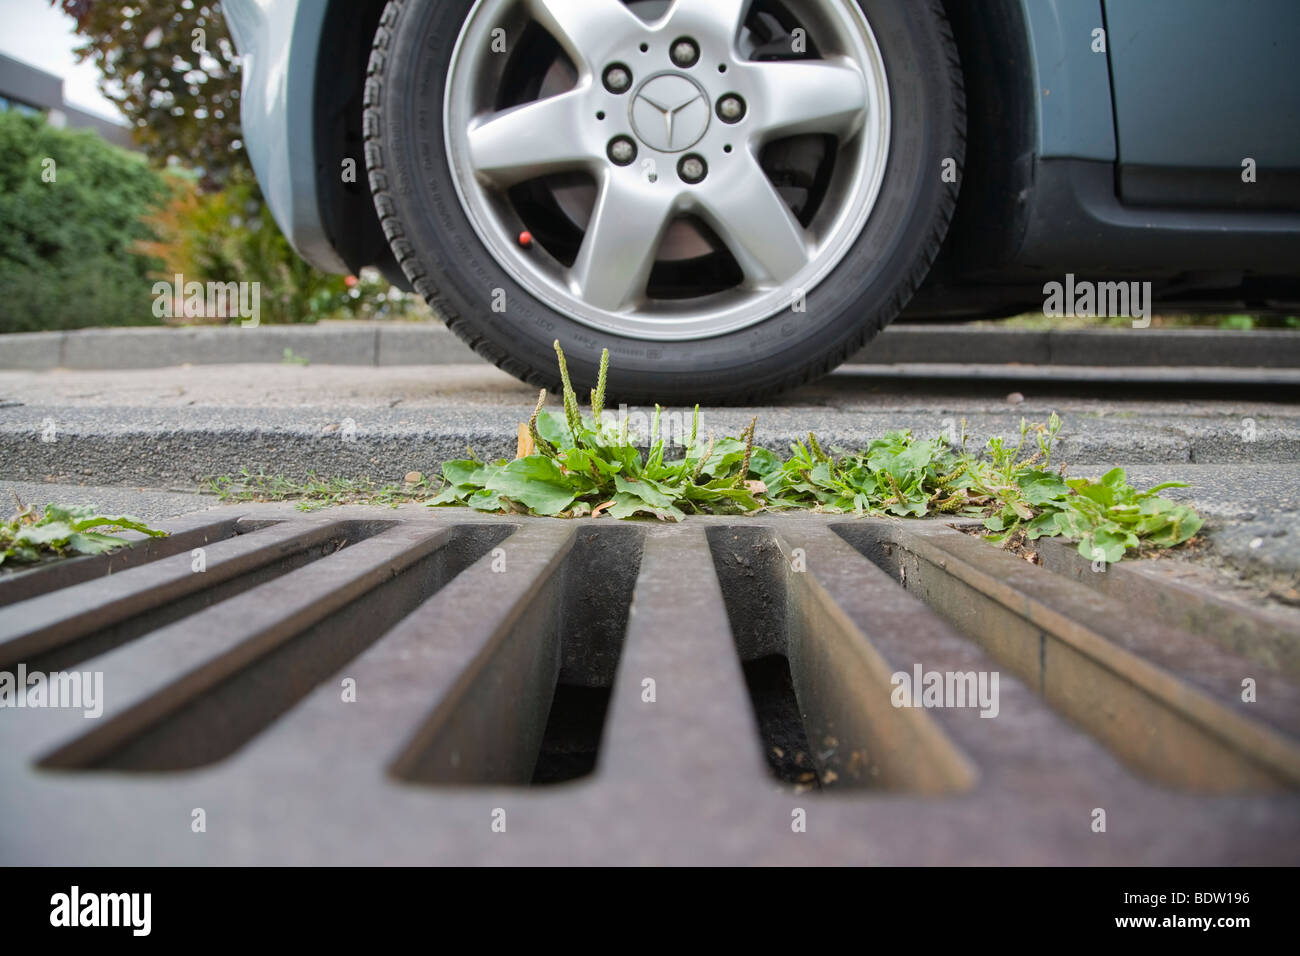 mercedes-autoreifen ueber einem gullydeckel, aus dem gruenzeug waechst, car wheels at manhole cover Stock Photo